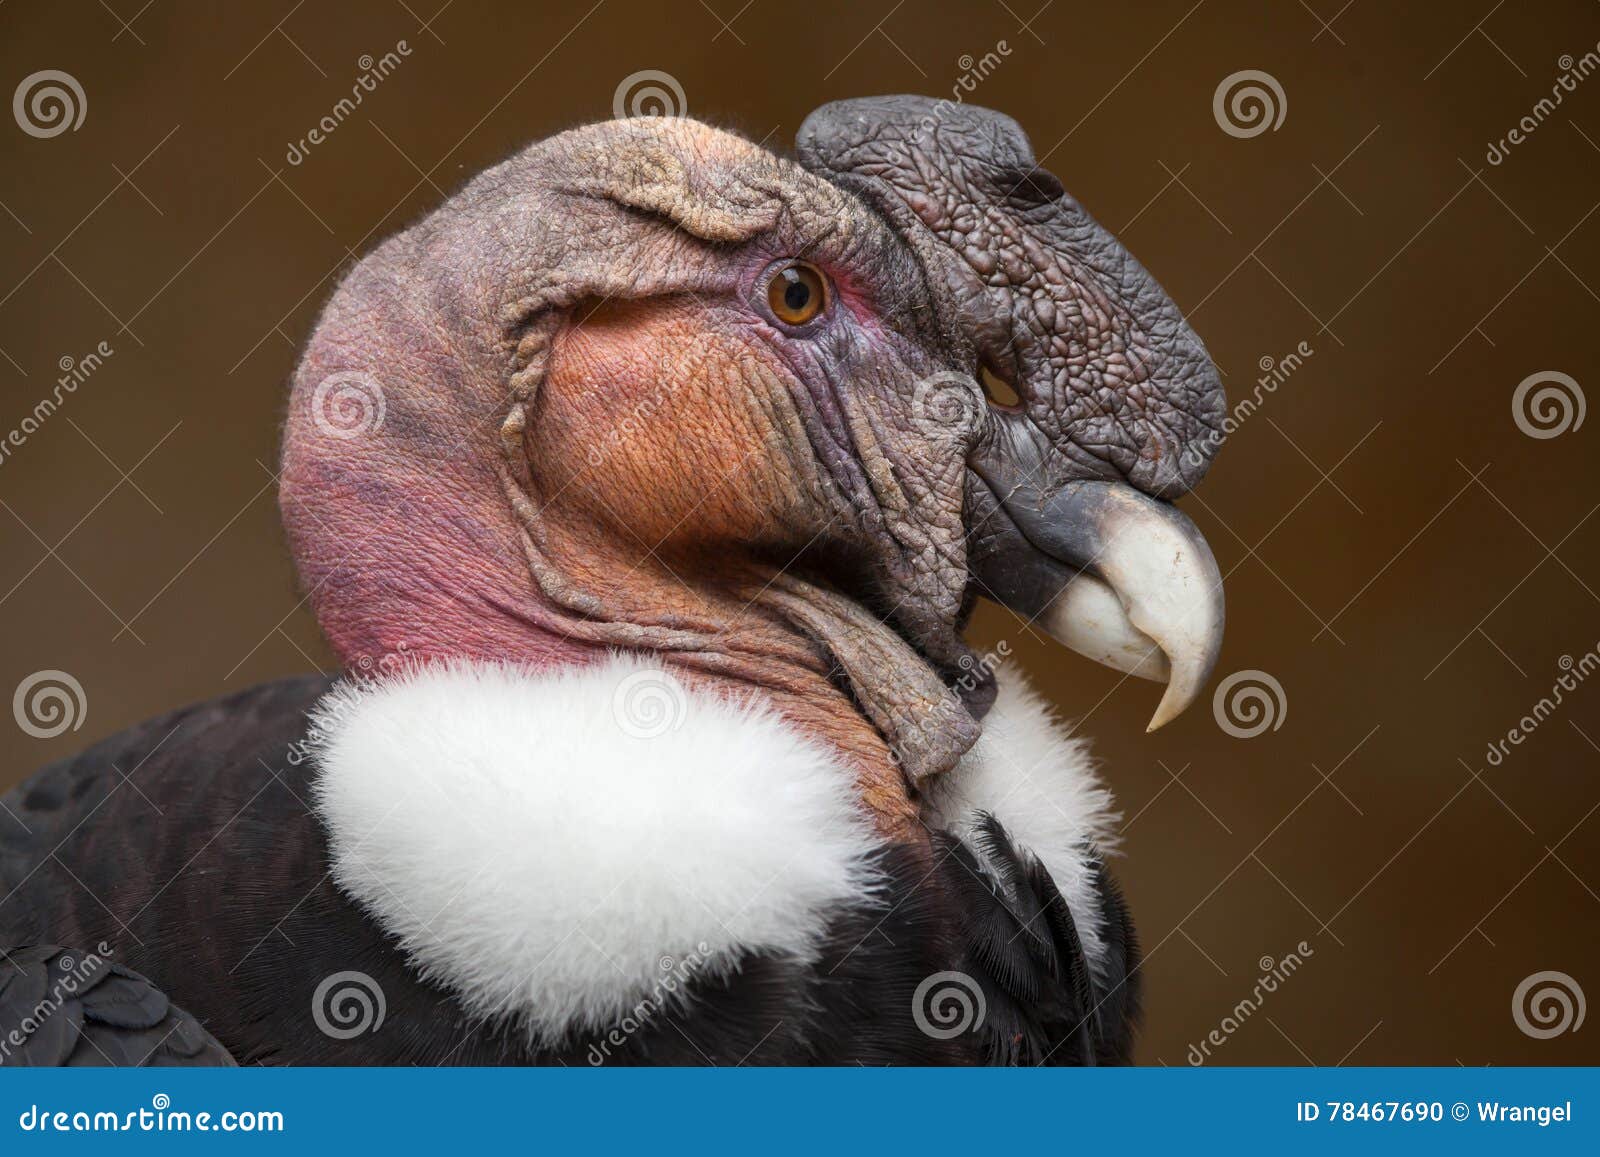 andean condor (vultur gryphus).